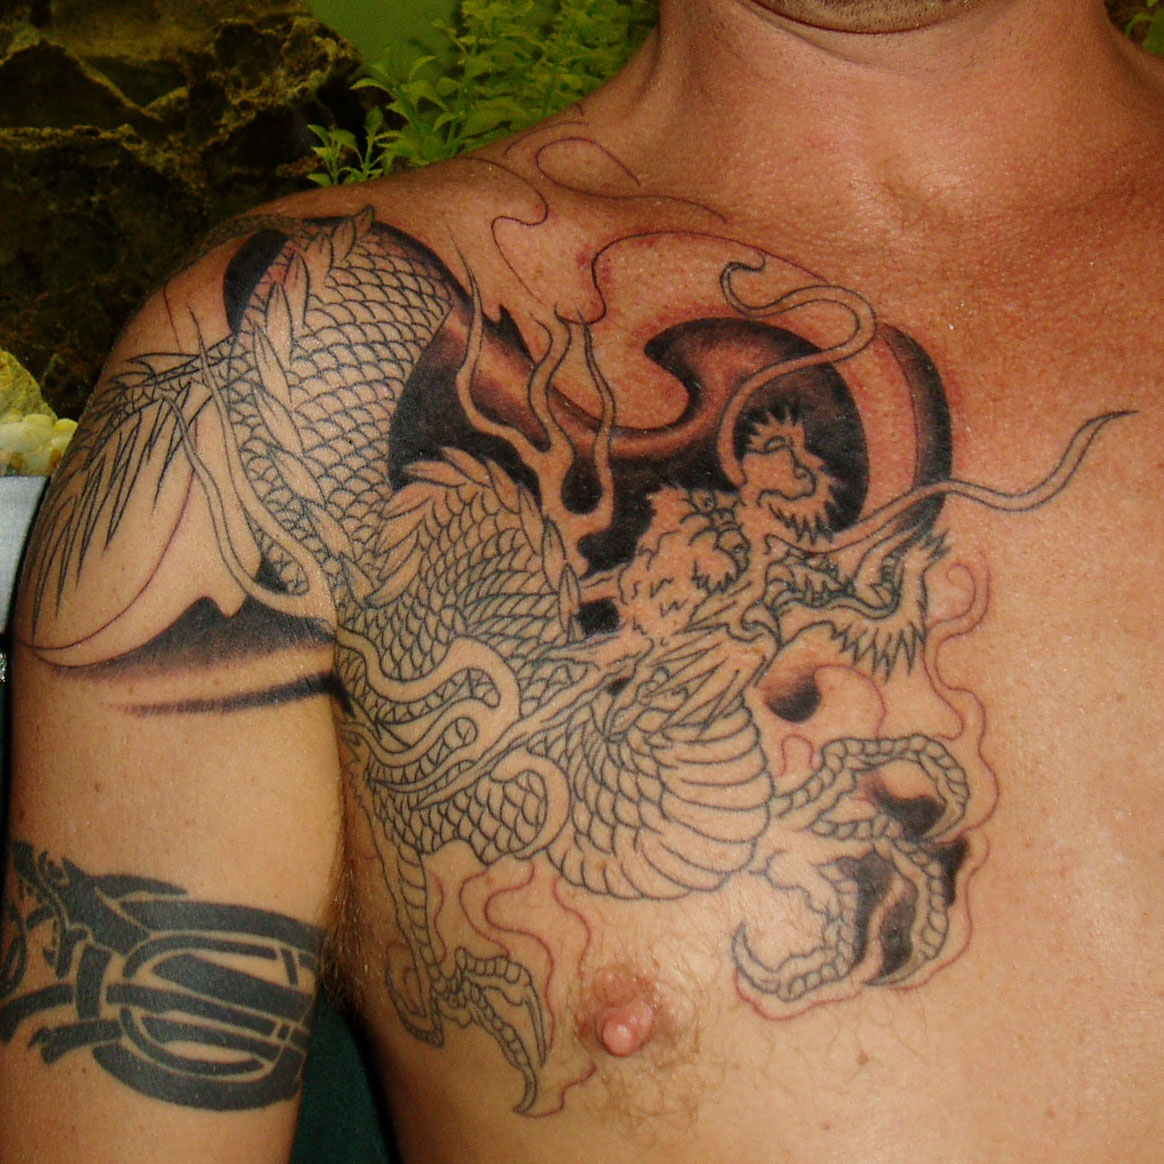 http://3.bp.blogspot.com/_VezUbgtAF0c/TBYIX0cfm6I/AAAAAAAAC4Q/9vb8A5BSwMk/s1600/tattoos%2Bmeaning%2Bdesign.jpg